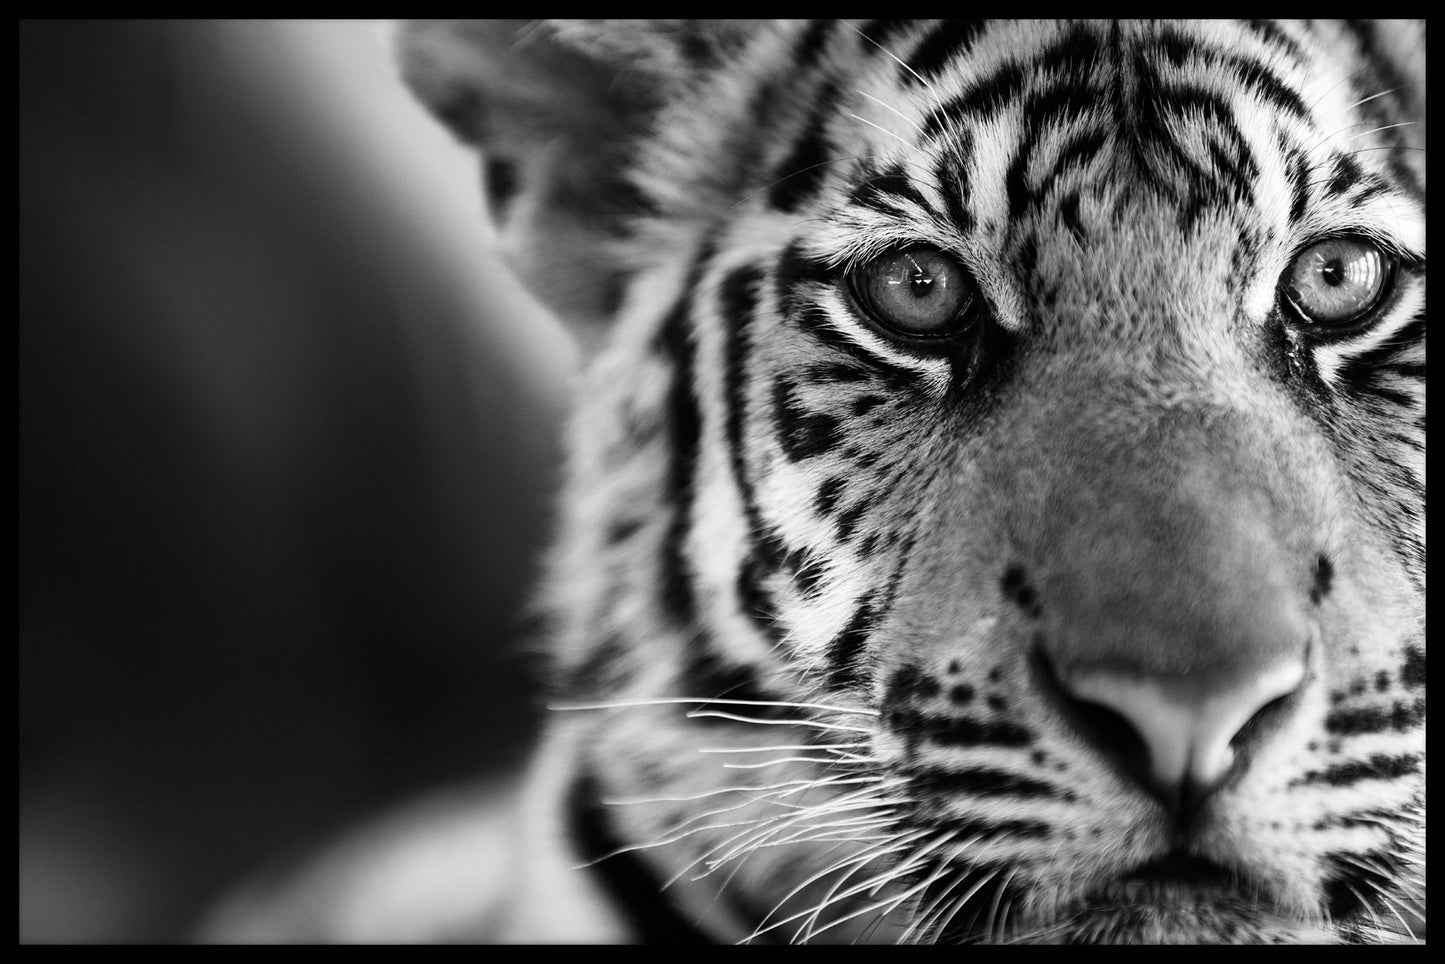  Tiger sort og hvid plakat